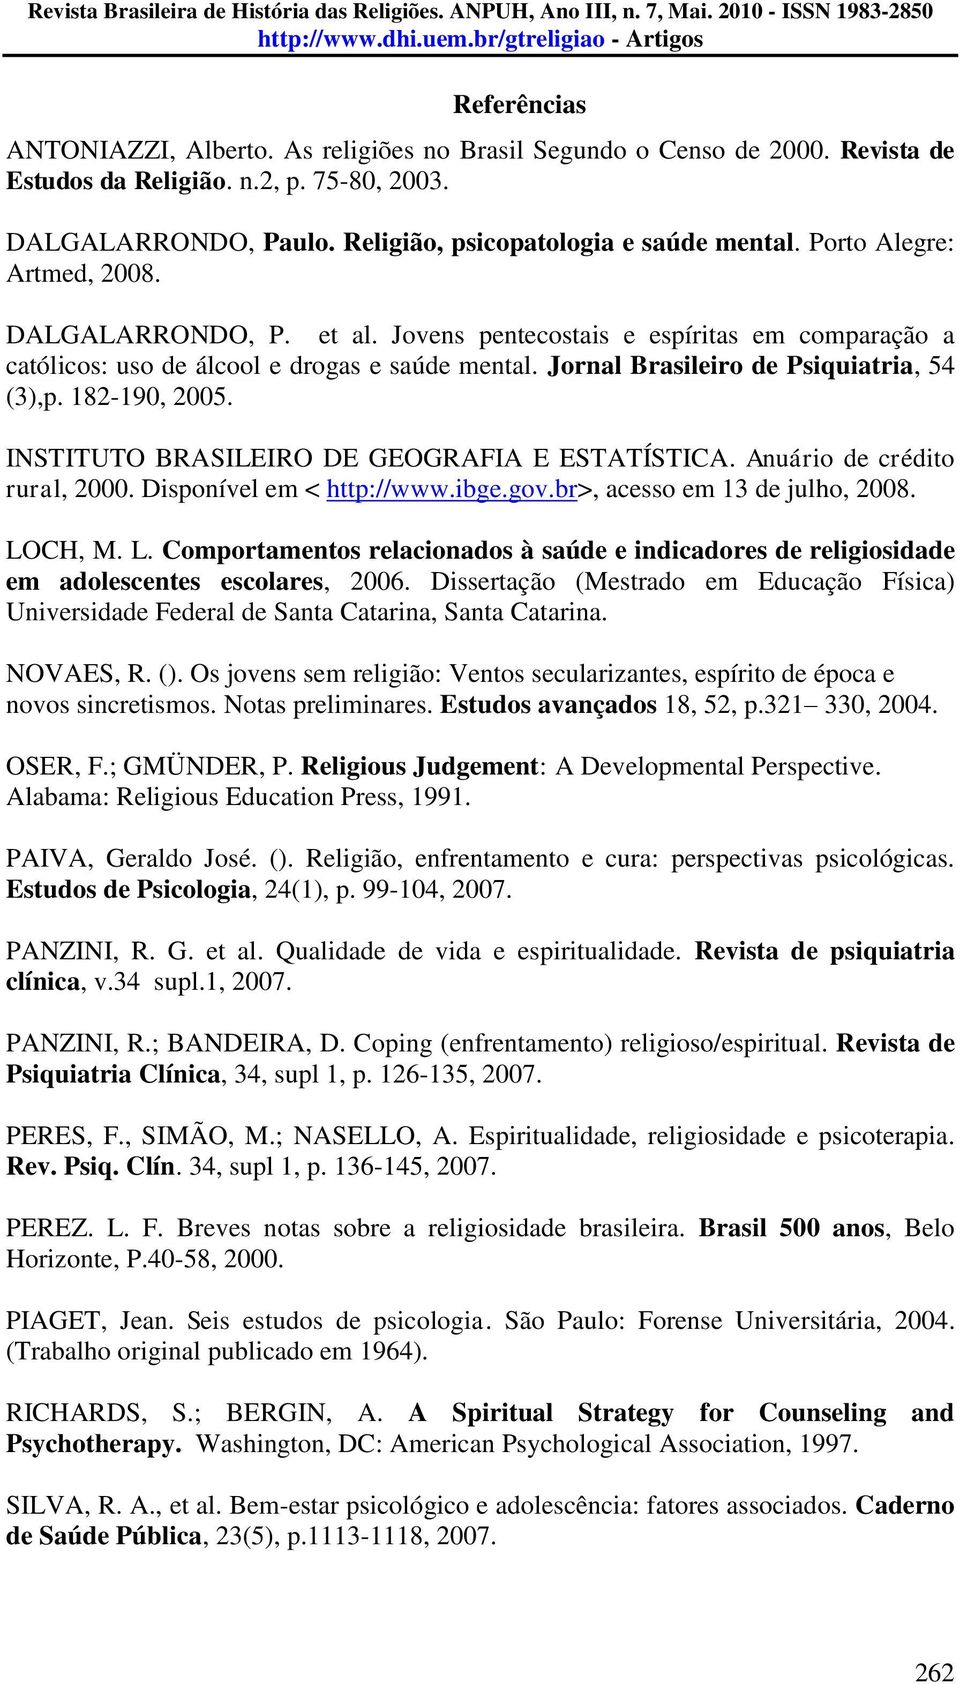 182-190, 2005. INSTITUTO BRASILEIRO DE GEOGRAFIA E ESTATÍSTICA. Anuário de crédito rural, 2000. Disponível em < http://www.ibge.gov.br>, acesso em 13 de julho, 2008. LO